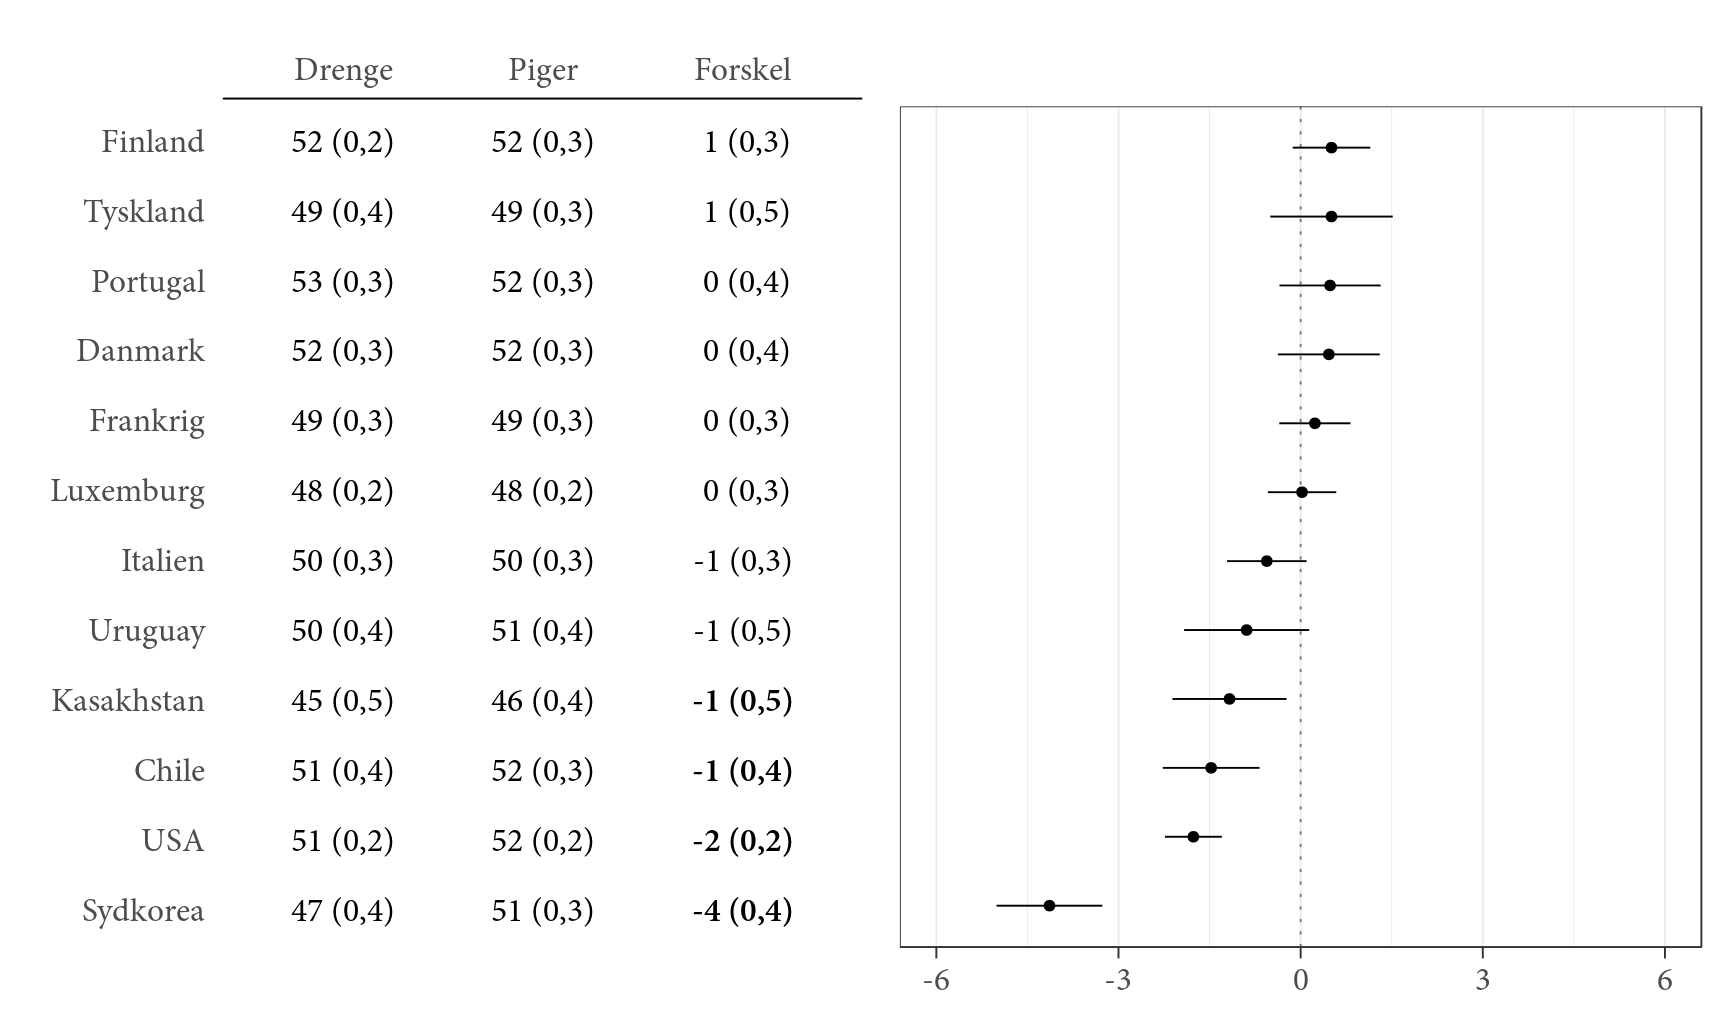 Kønsforskelle i tiltro til egne evner i forhold til basale aktiviteter med en computer opdelt på land. Tal viser gennemsnit på skalaen for tiltro til egne evner i forhold til basale aktiviteter med en computer. Standardfejl er angivet i parentes. Tal i kolonnen ’Forskel’ kan forekomme inkonsistent i forhold til andre tal i tabellen på grund af afrunding. Forskelle der er signifikante, er markeret med fed. Prikker viser den gennemsnitlige forskel mellem drenge og piger på skalaen. Positive værdier angiver at drenge i højere grad end piger har tiltro til egne evner. Horisontale linjer angiver et 95-procentkonfidensinterval. Landene er rangeret efter forskellen mellem drenge og piger.